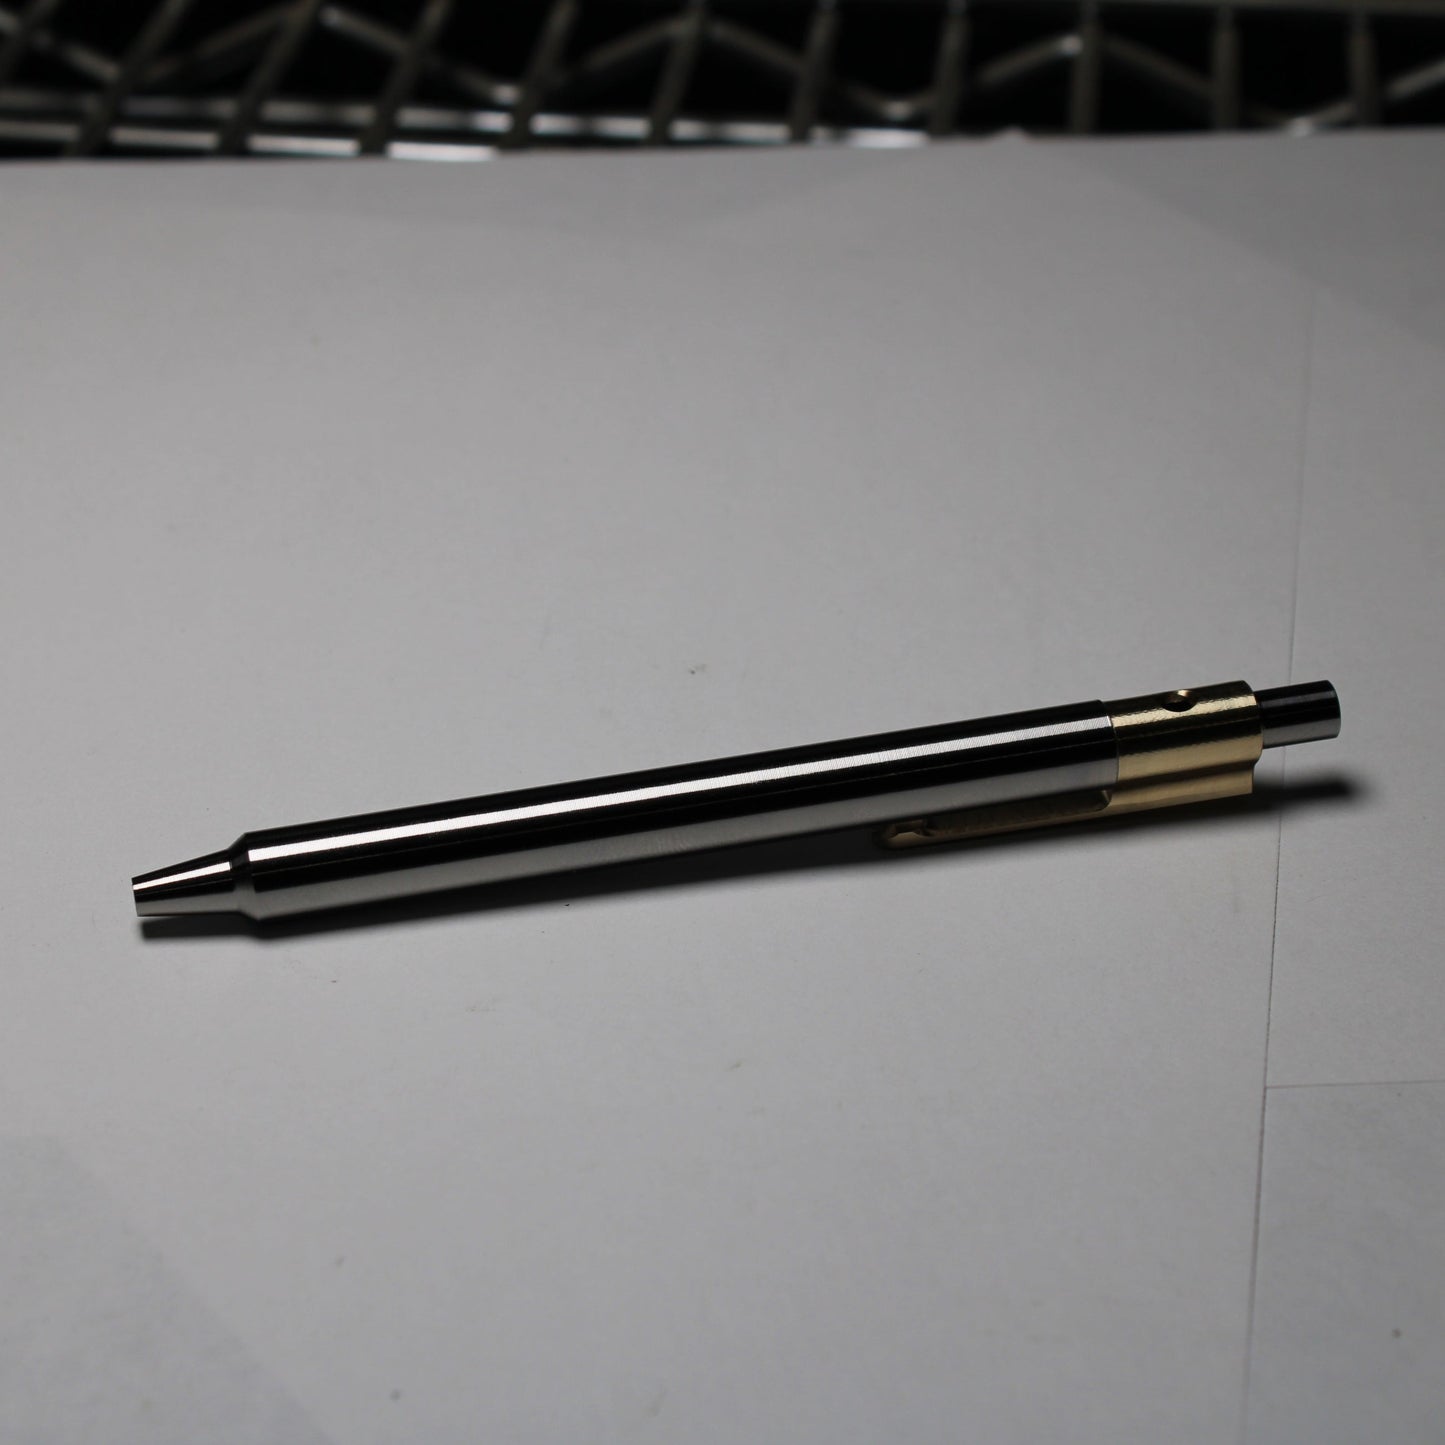 36 Click Pen - 6Al-4V - ISO G2 (Parker) - Step Nose - 464 Brass Clip